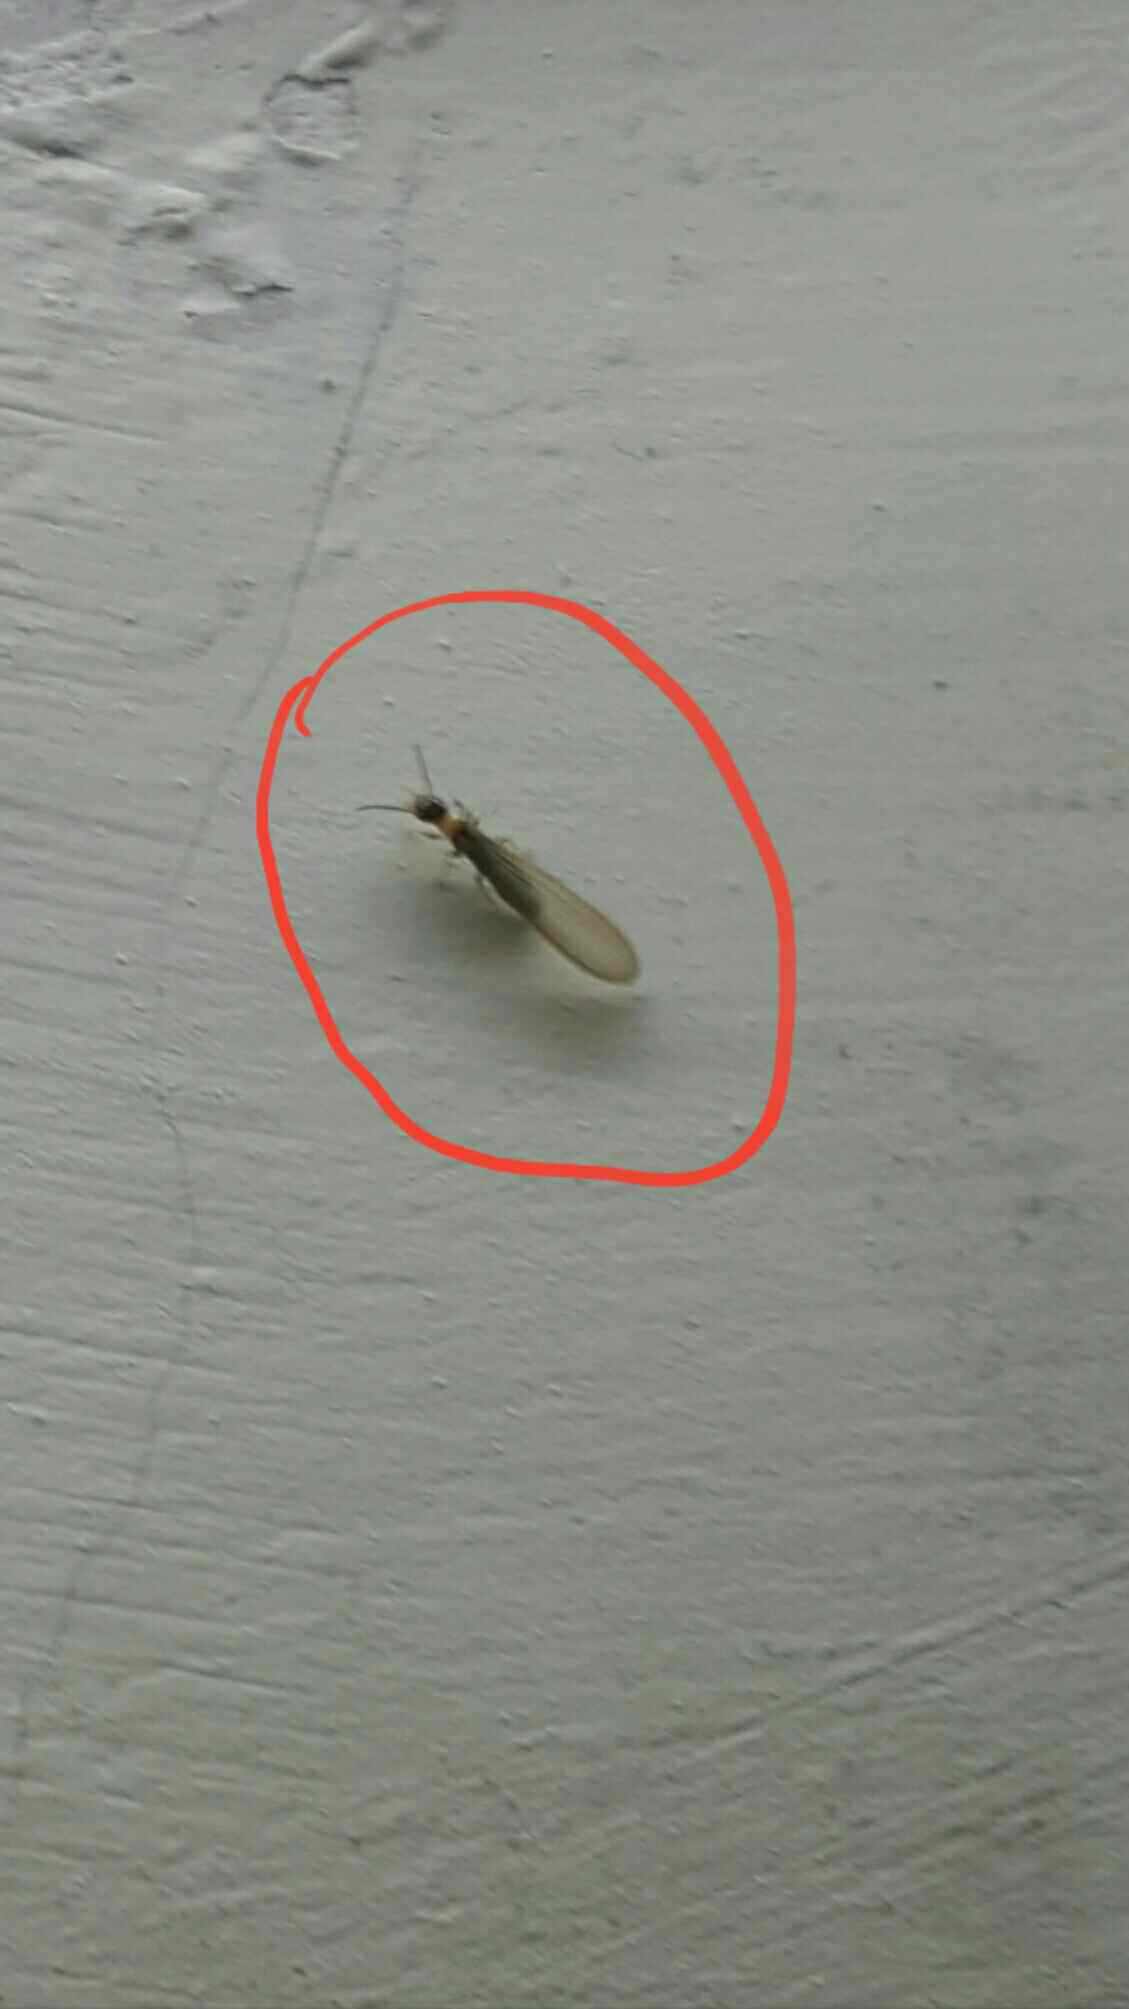 求助啊!家里冒出很多小虫,看看是白蚁吗